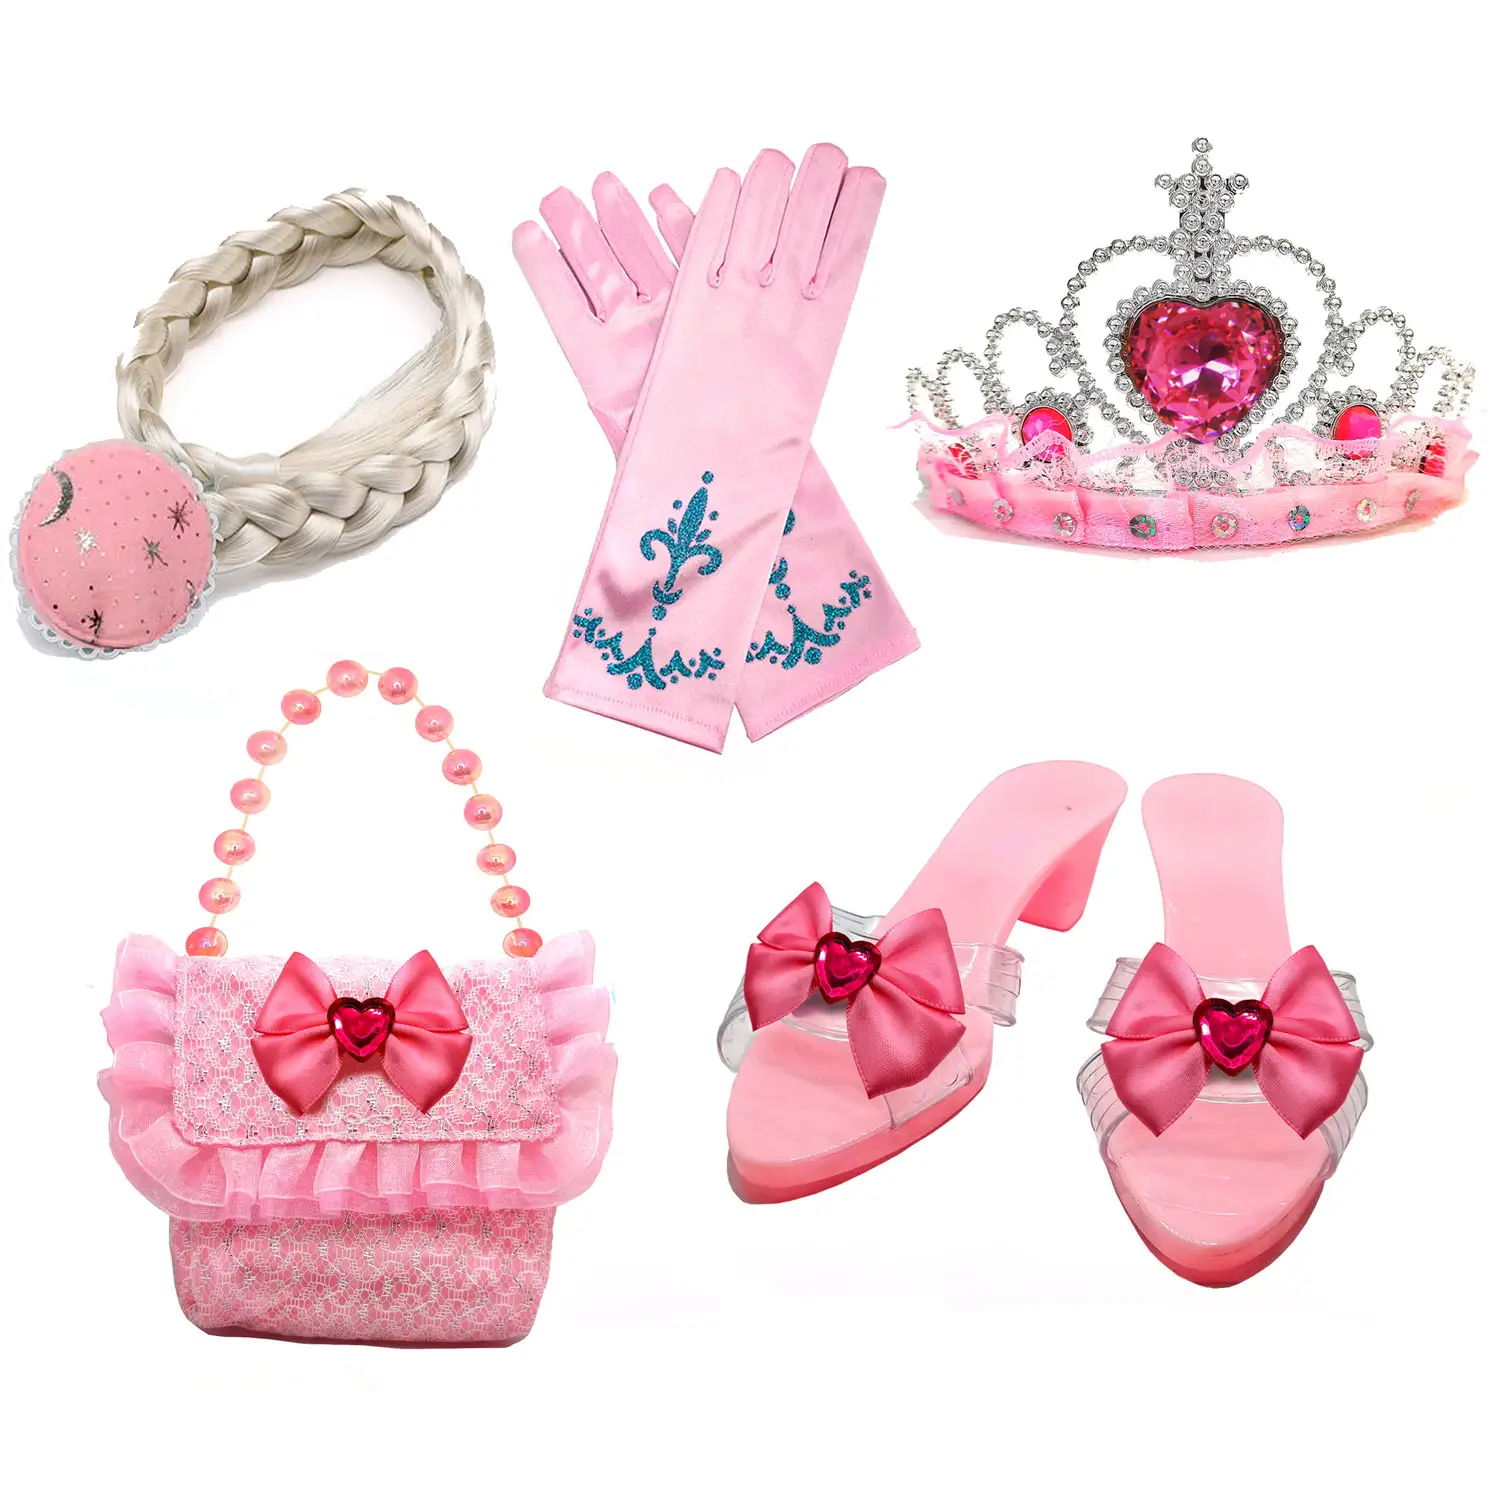 Crianças Perucas de Cabelo Boutique Crown Purse Shoes Princesa Role Play Dress Up Toy Set para Meninas 3 4 5 anos